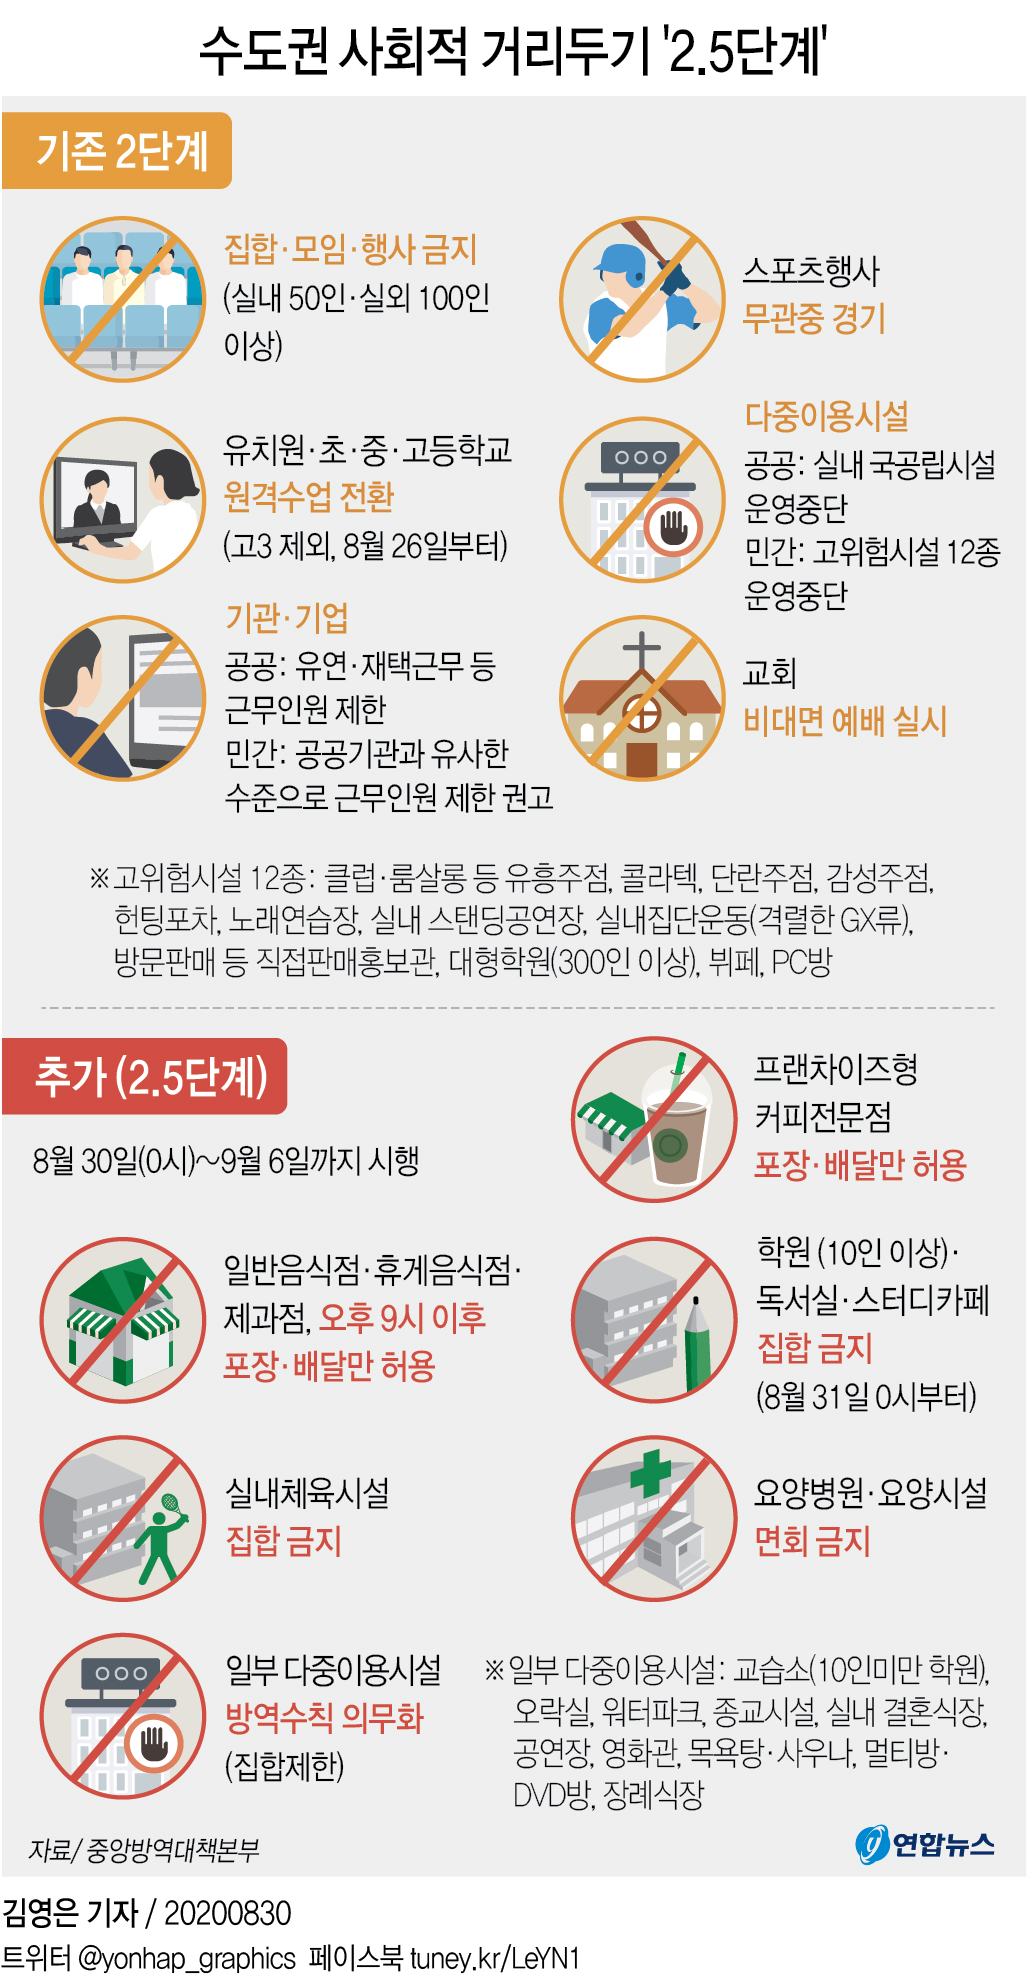 그래픽 수도권 사회적 거리두기 '2.5단계' | 연합뉴스